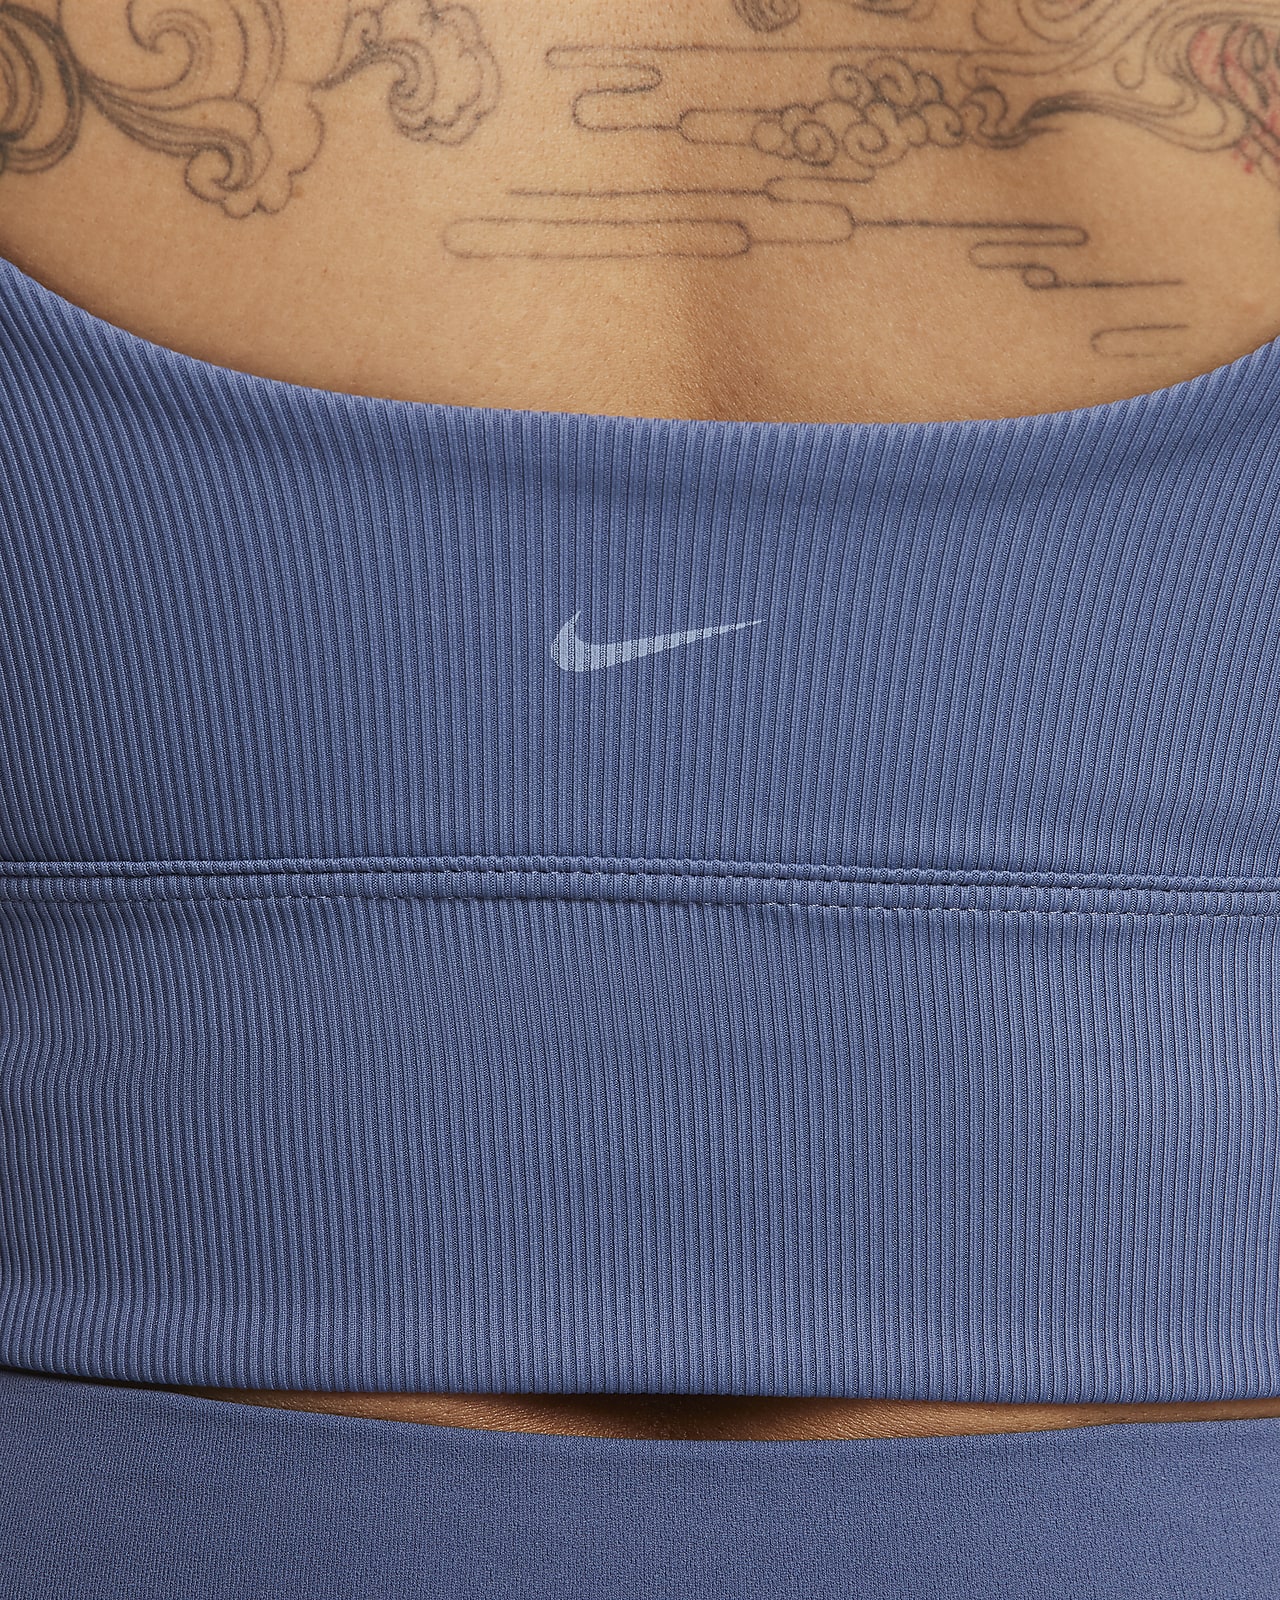 50 - £100 Zenvy Recycled Nylon Sports Bras. Nike UK